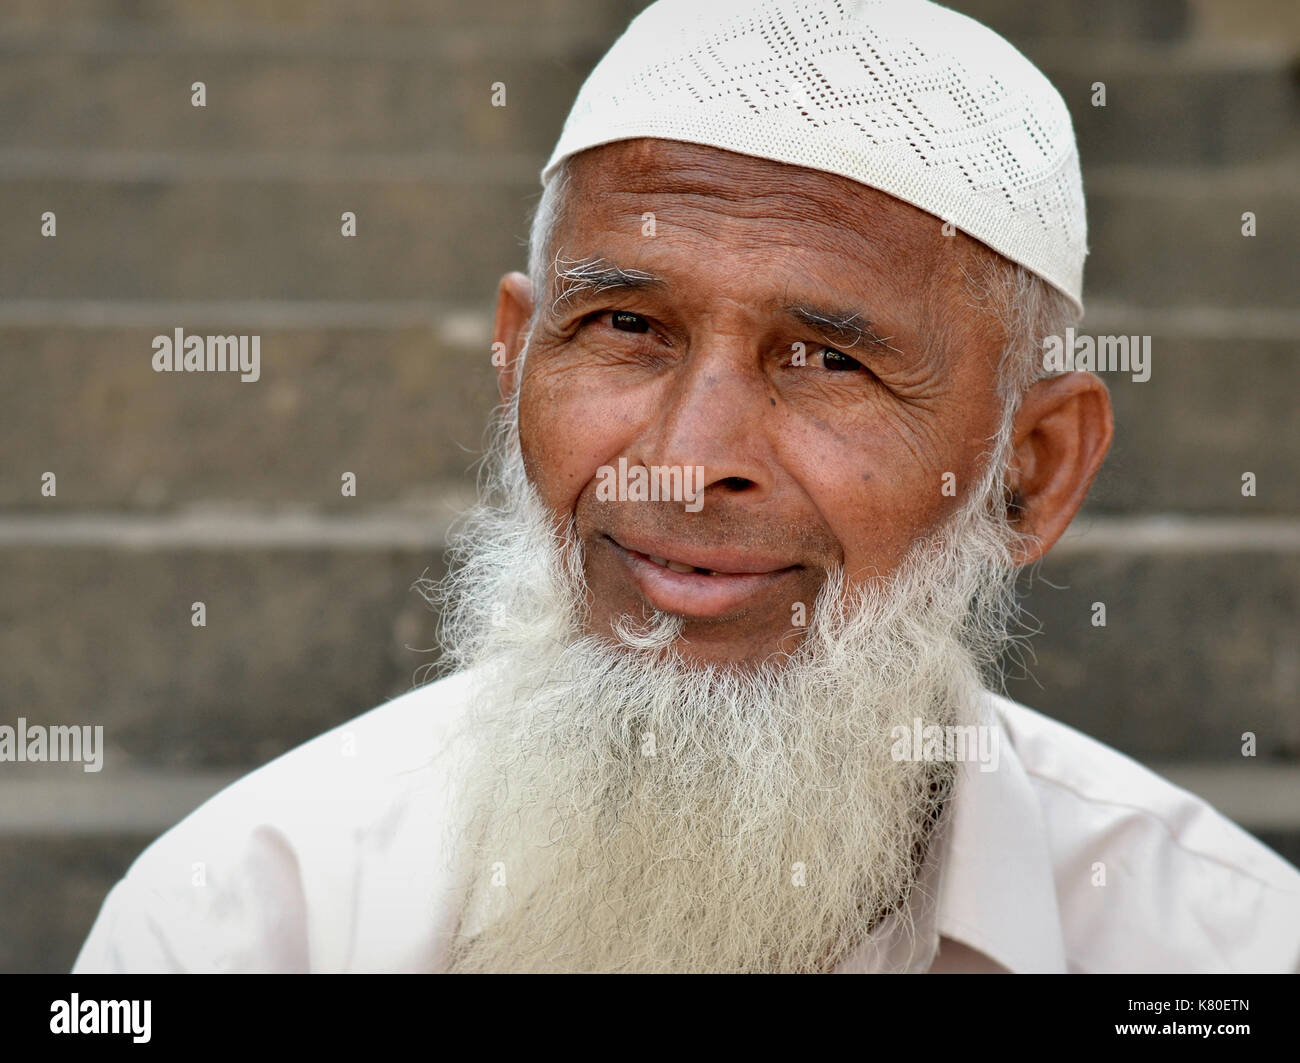 Uomo musulmano indiano anziano con la barba islamica che indossa un cappuccio di preghiera bianco (taqiyah) e pone per la macchina fotografica. Foto Stock